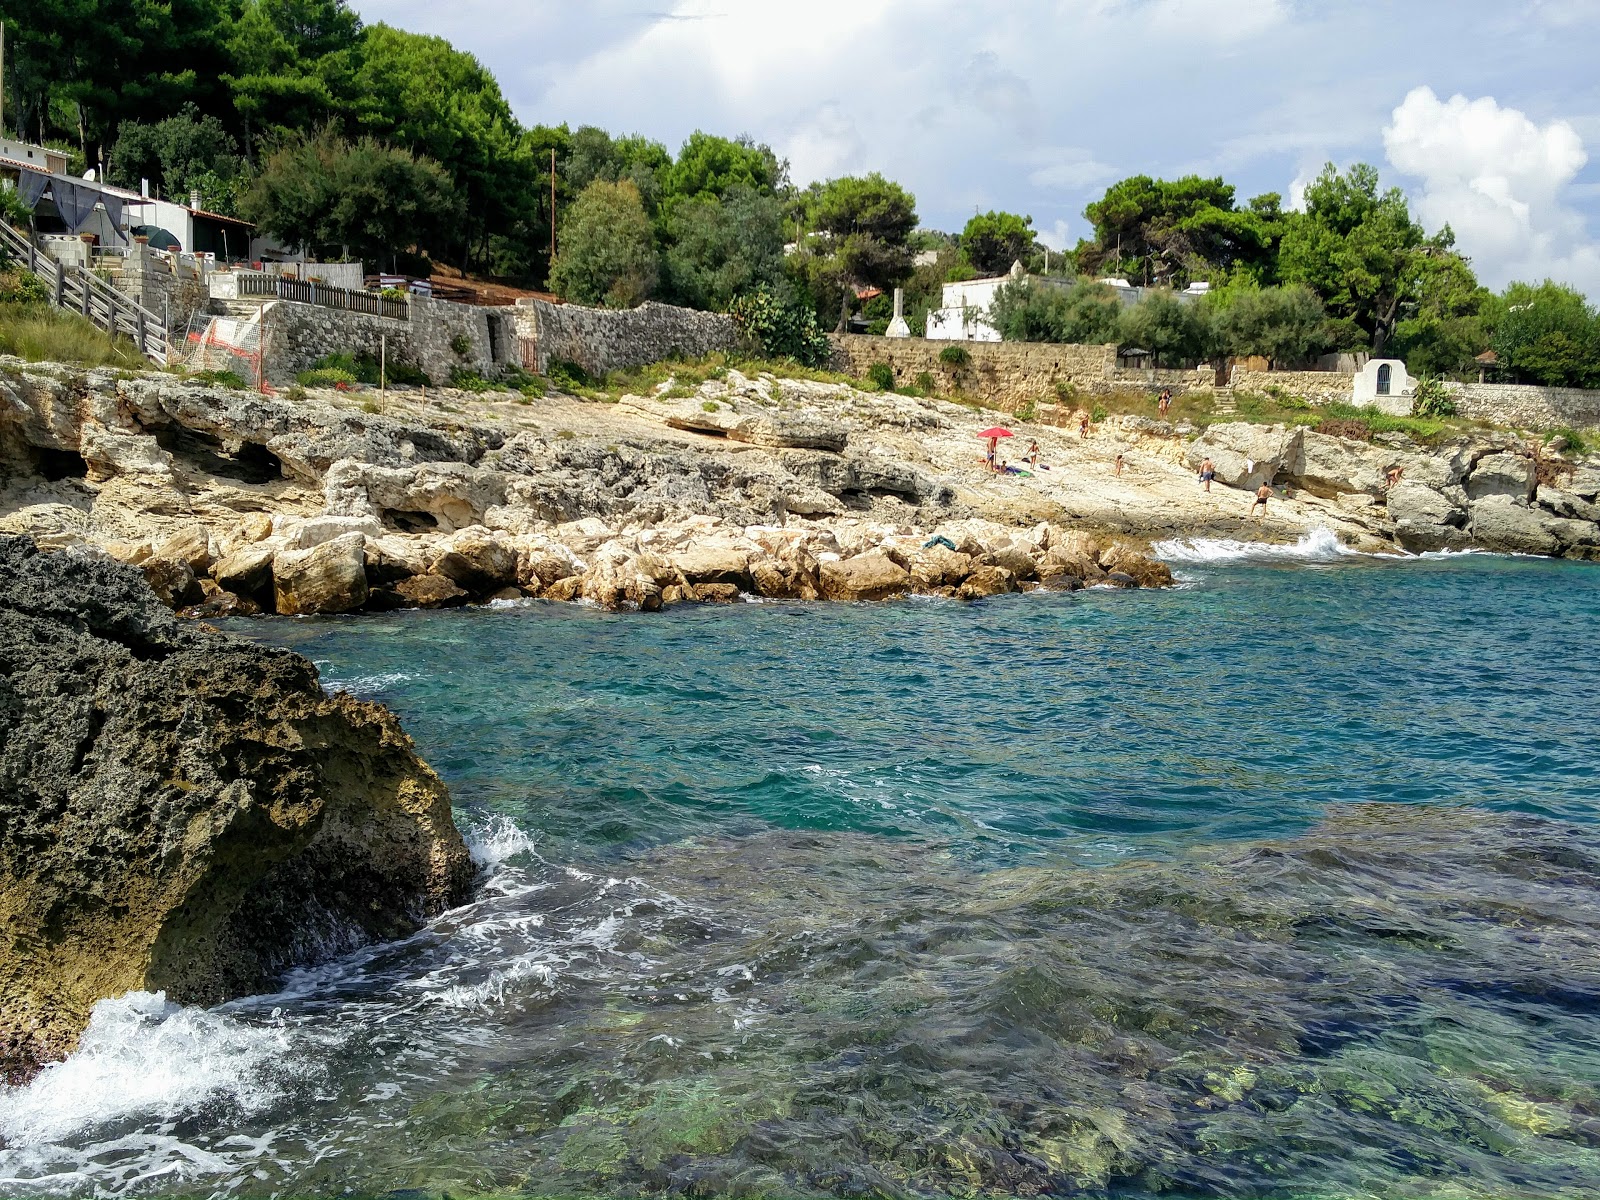 Fotografija Spiaggia di Chianca Liscia nahaja se v naravnem okolju